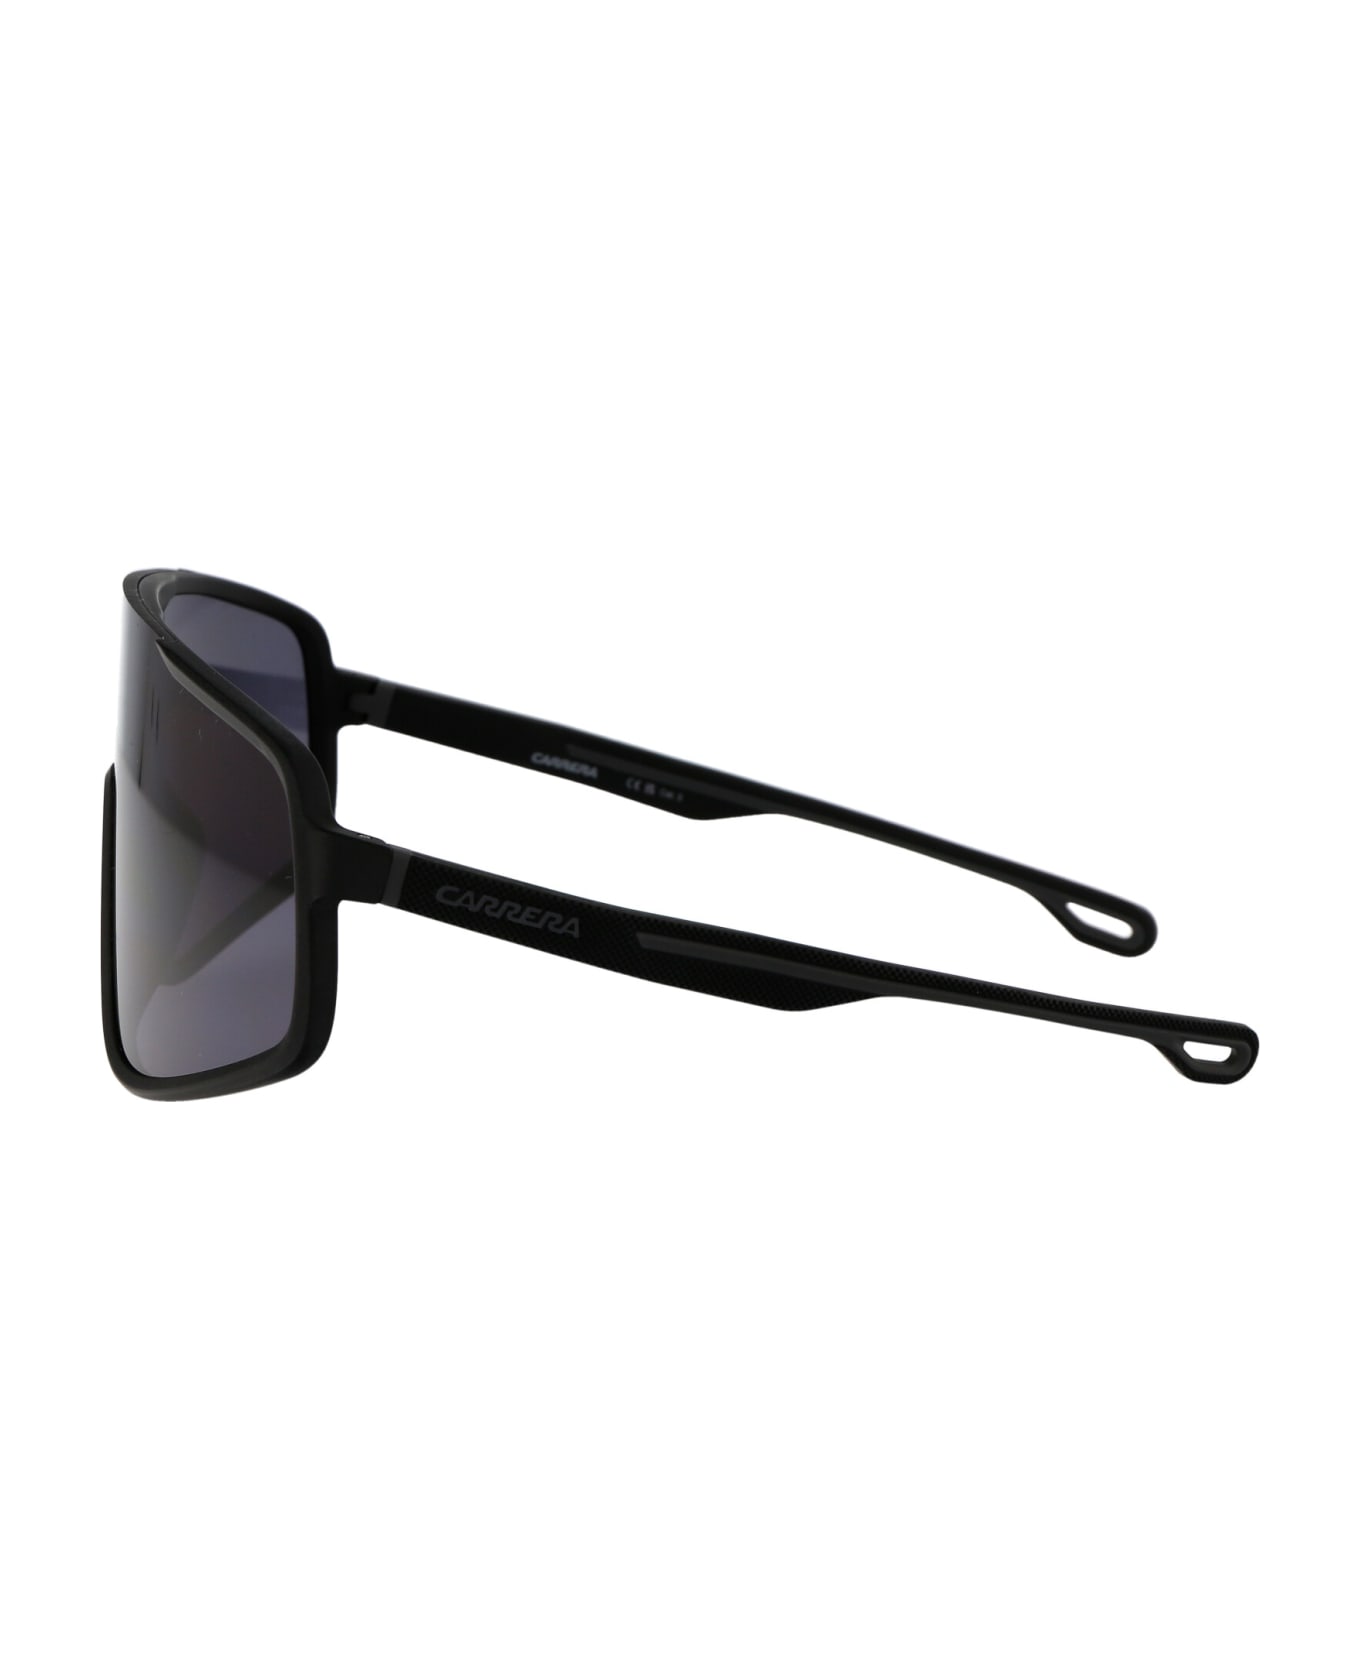 Carrera 4017/s Sunglasses - 003IR MTT BLACK